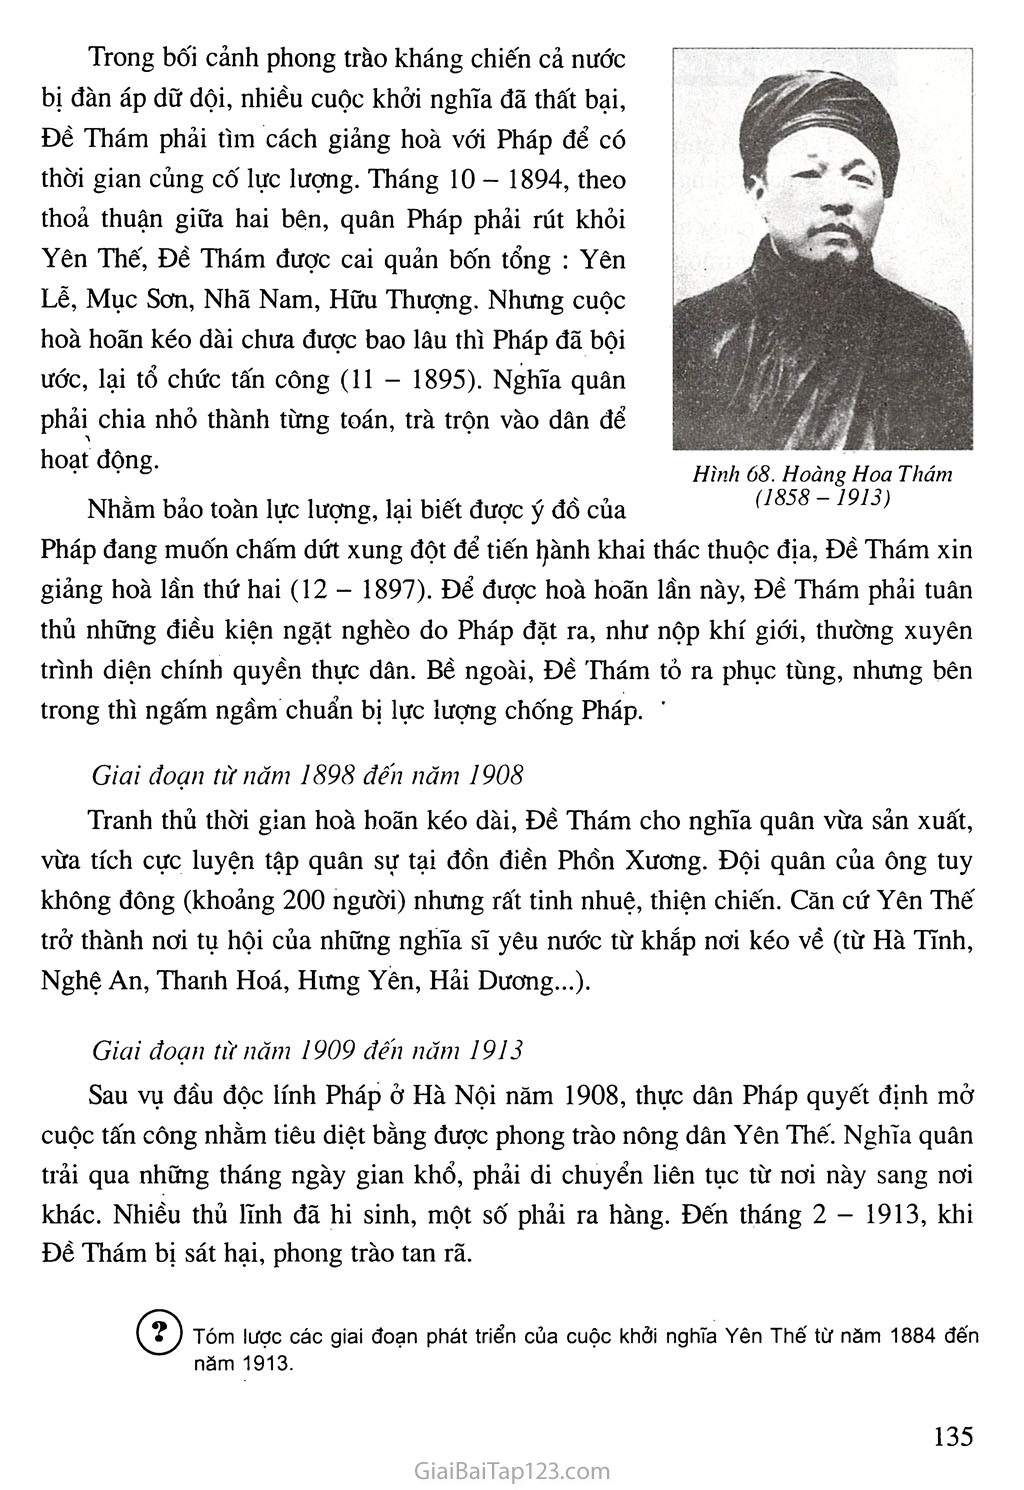 Bài 21. Phong trào yêu nước chống Pháp của nhân dân Việt Nam trong những năm cuối thế kỉ XIX trang 12